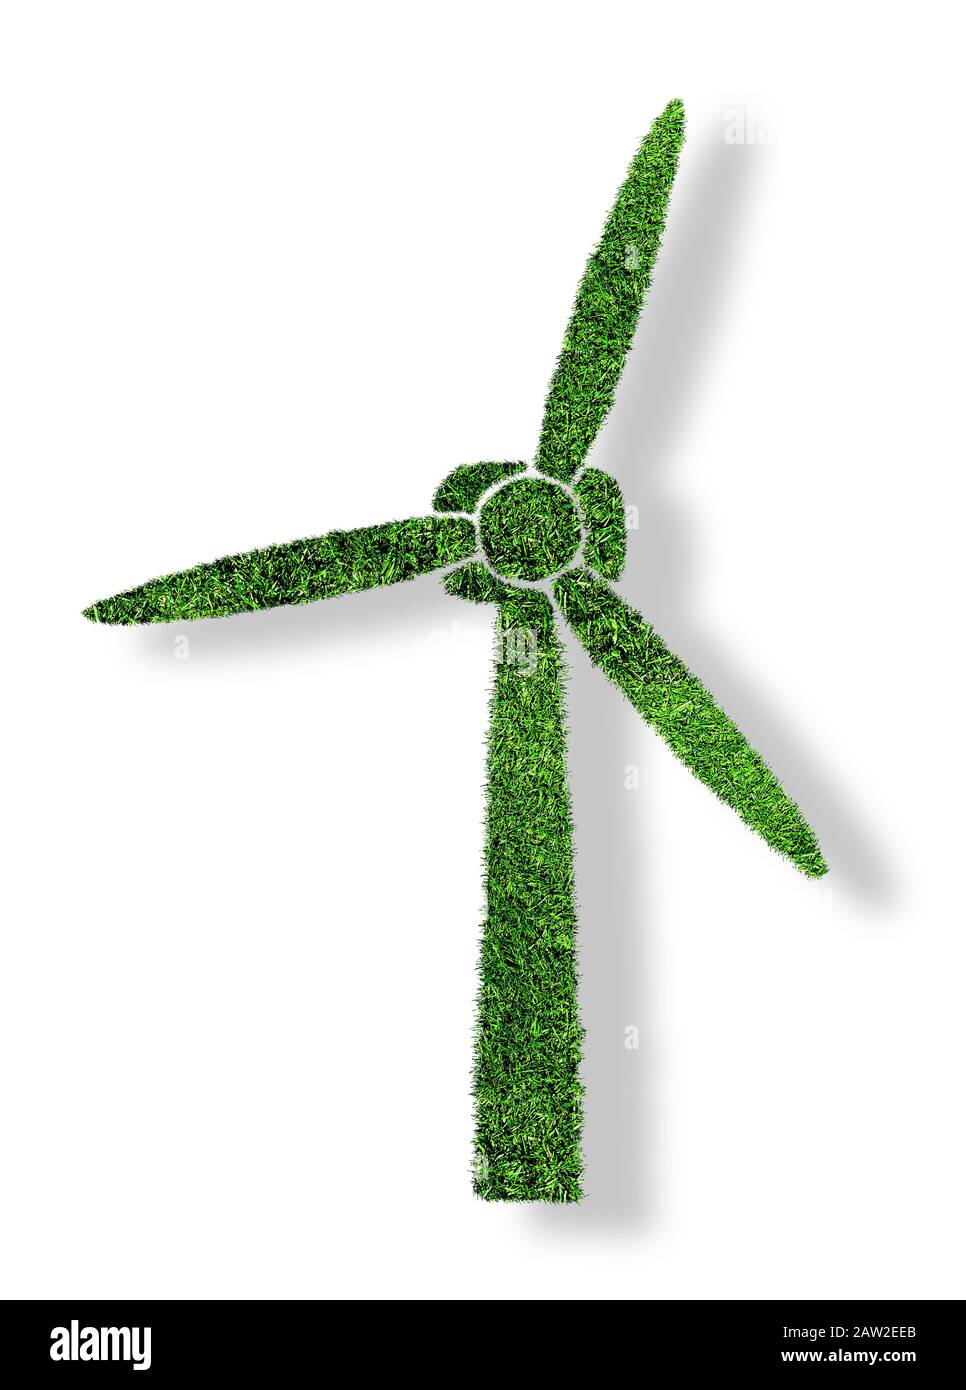 éolienne à herbe verte isolée sur fond blanc, symbole de concept d'énergie renouvelable et respectueuse du climat Banque D'Images